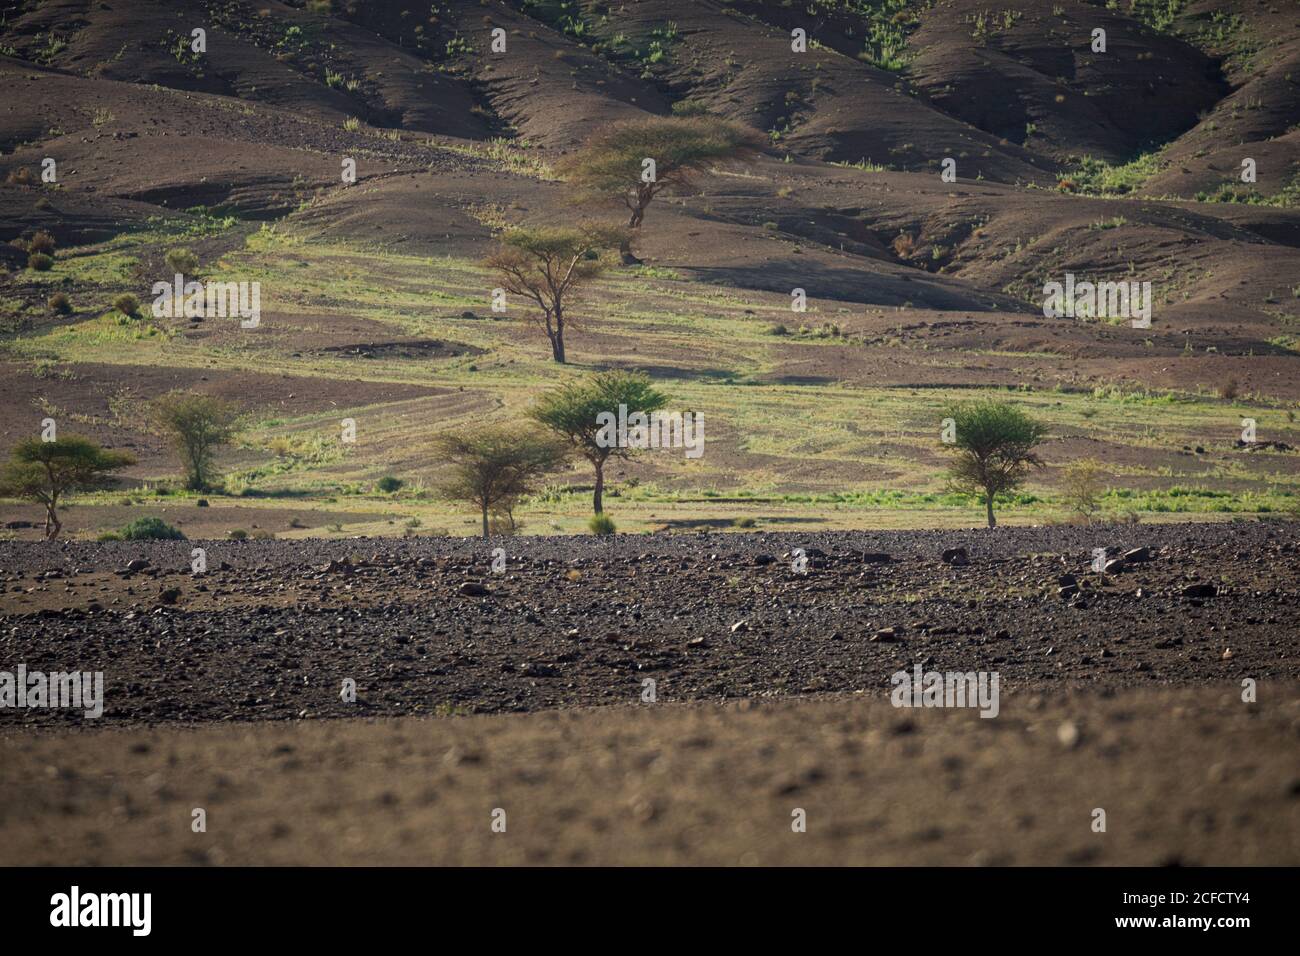 Amazing desert landscape with dry vegetation sand rocky hills in semi-desert Stock Photo